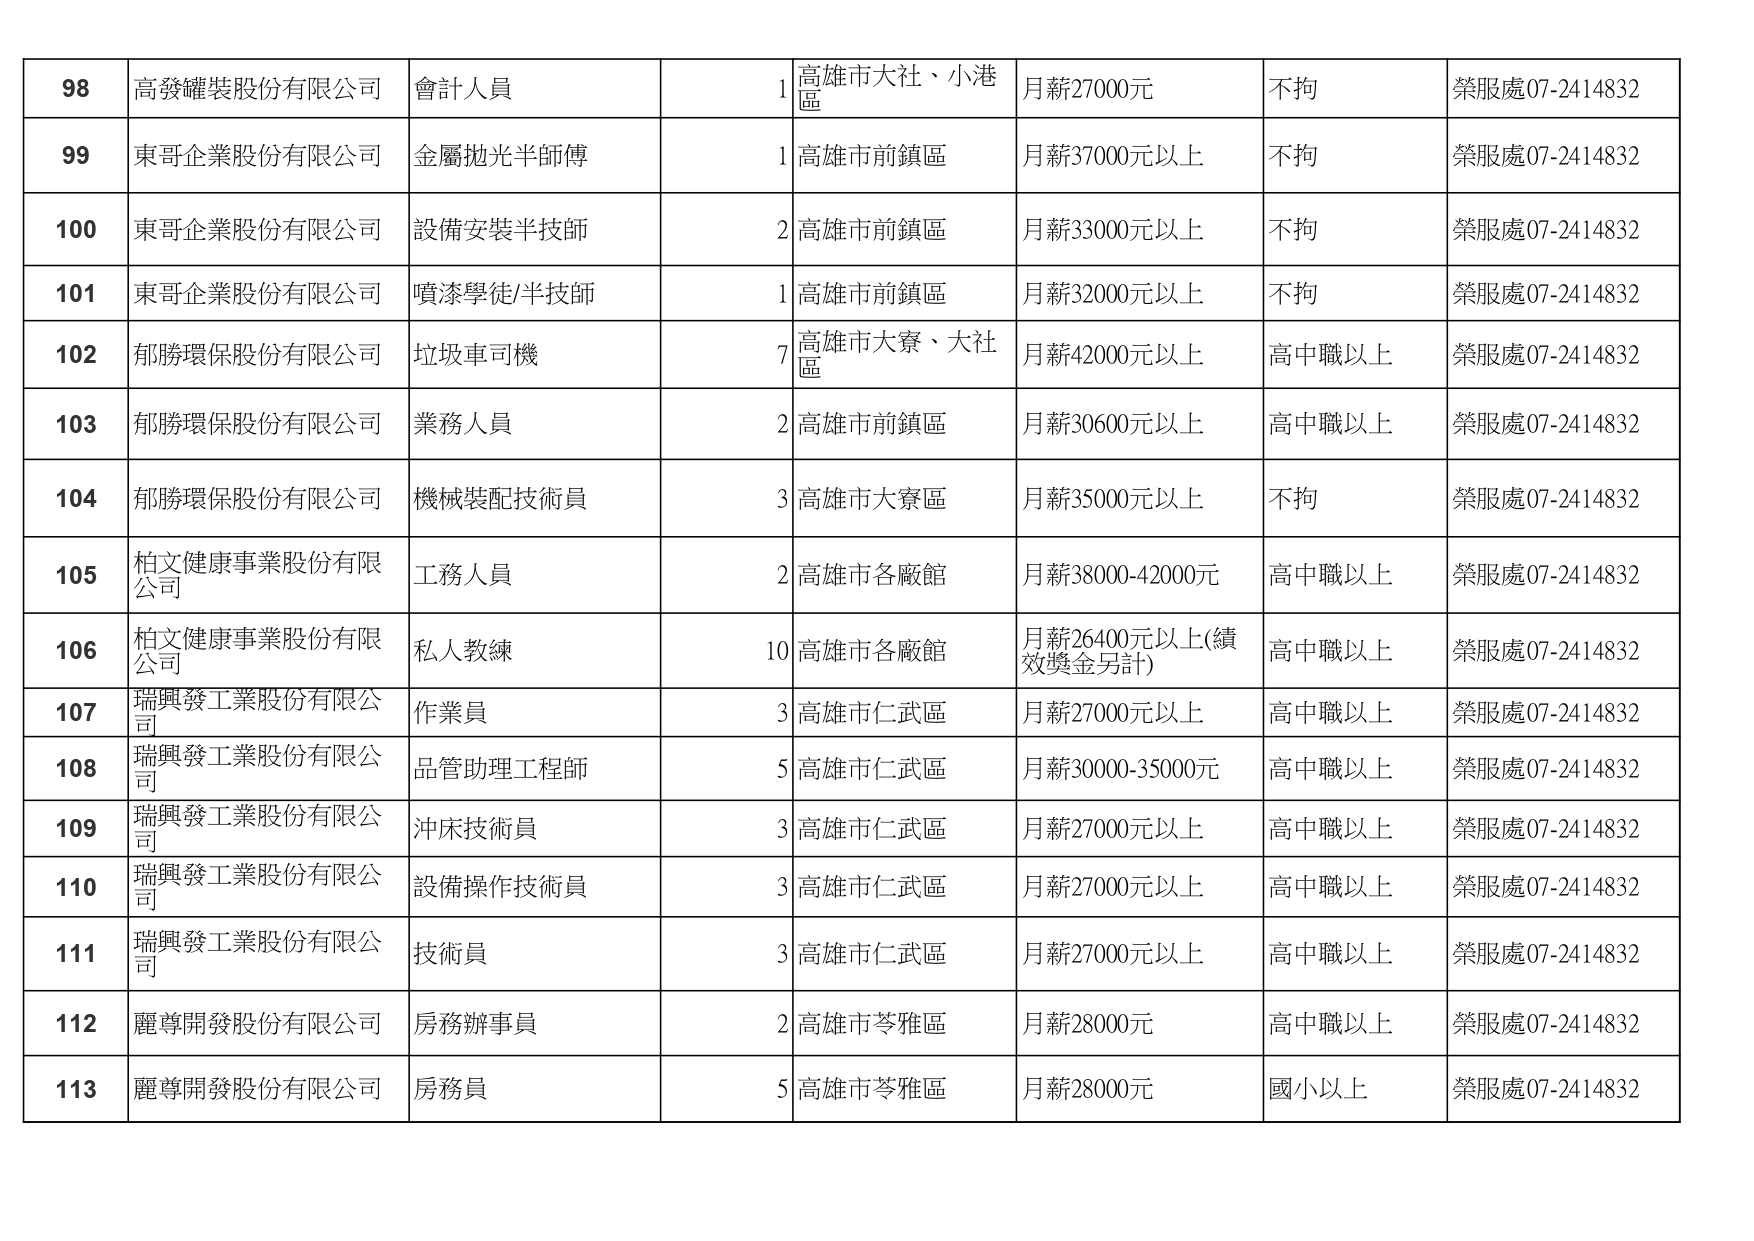 高雄榮服處-廠商職缺列表112.10.3_page-0008